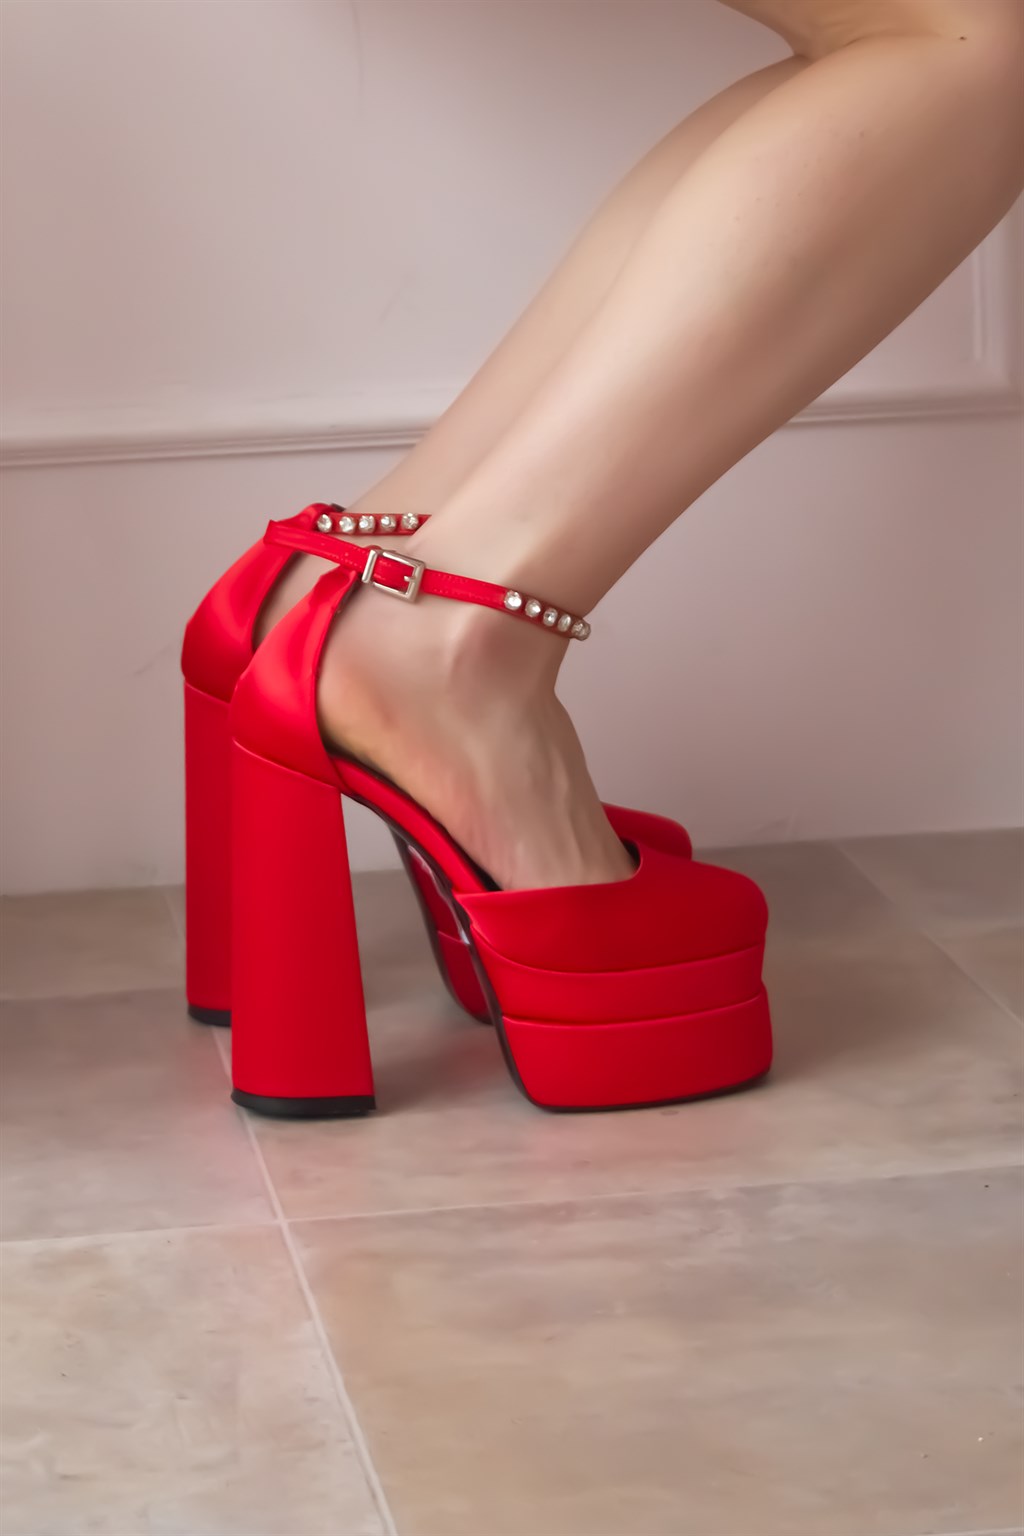 SHOETEK Kadın Topuklu Ayakkabı Saten Taşlı Çift Platformlu Rianna Kırmızı